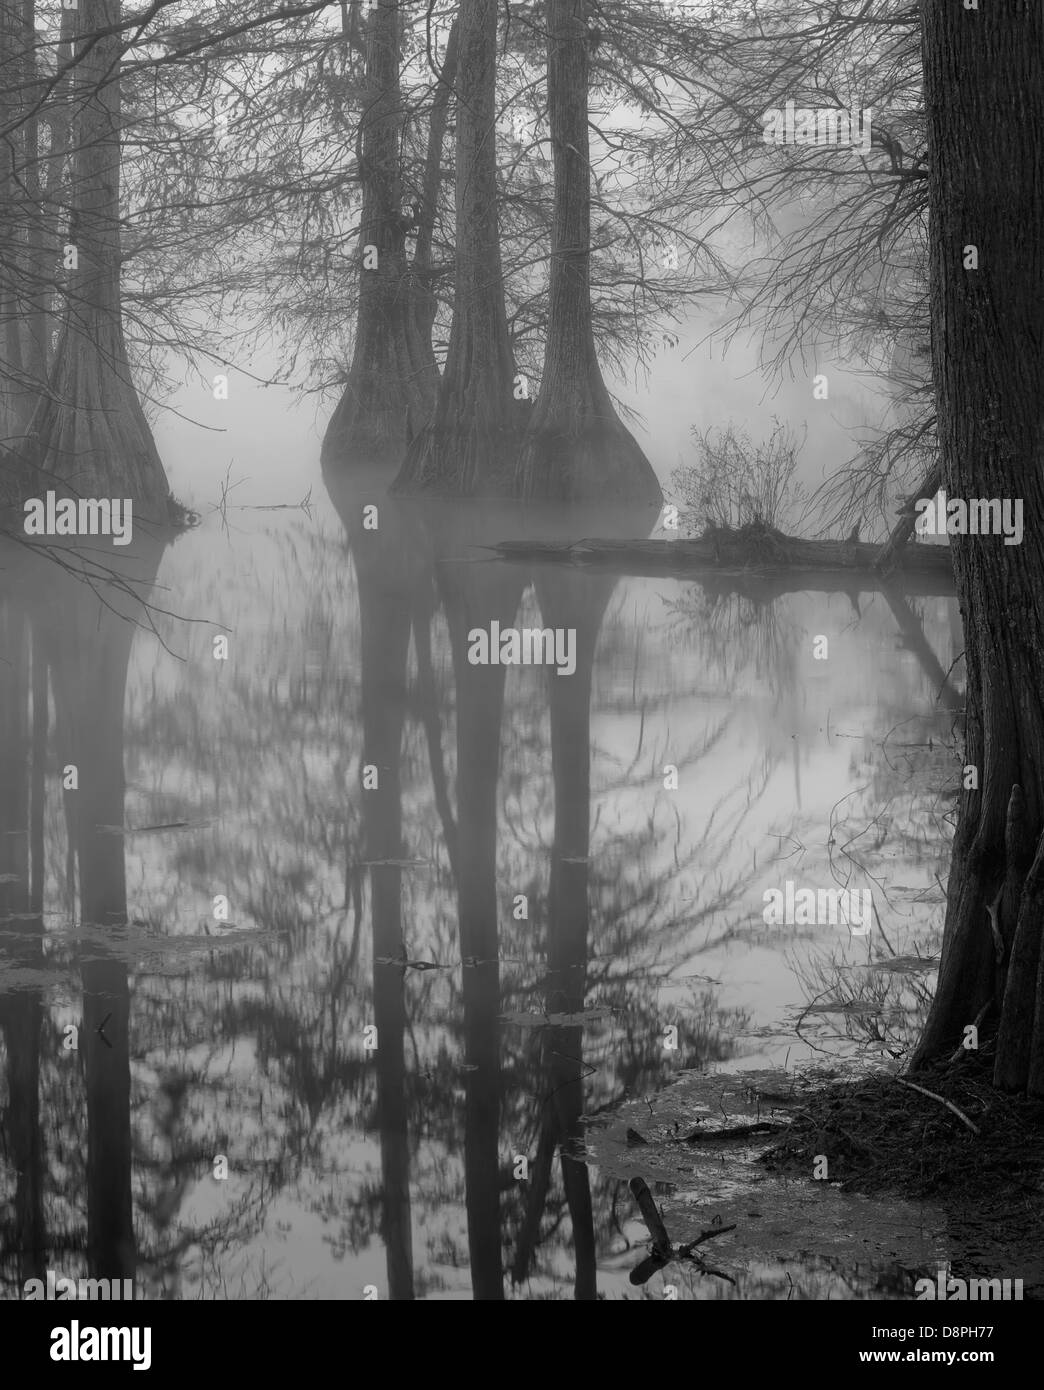 Cypress swamp nella nebbia, in bianco e nero Foto Stock